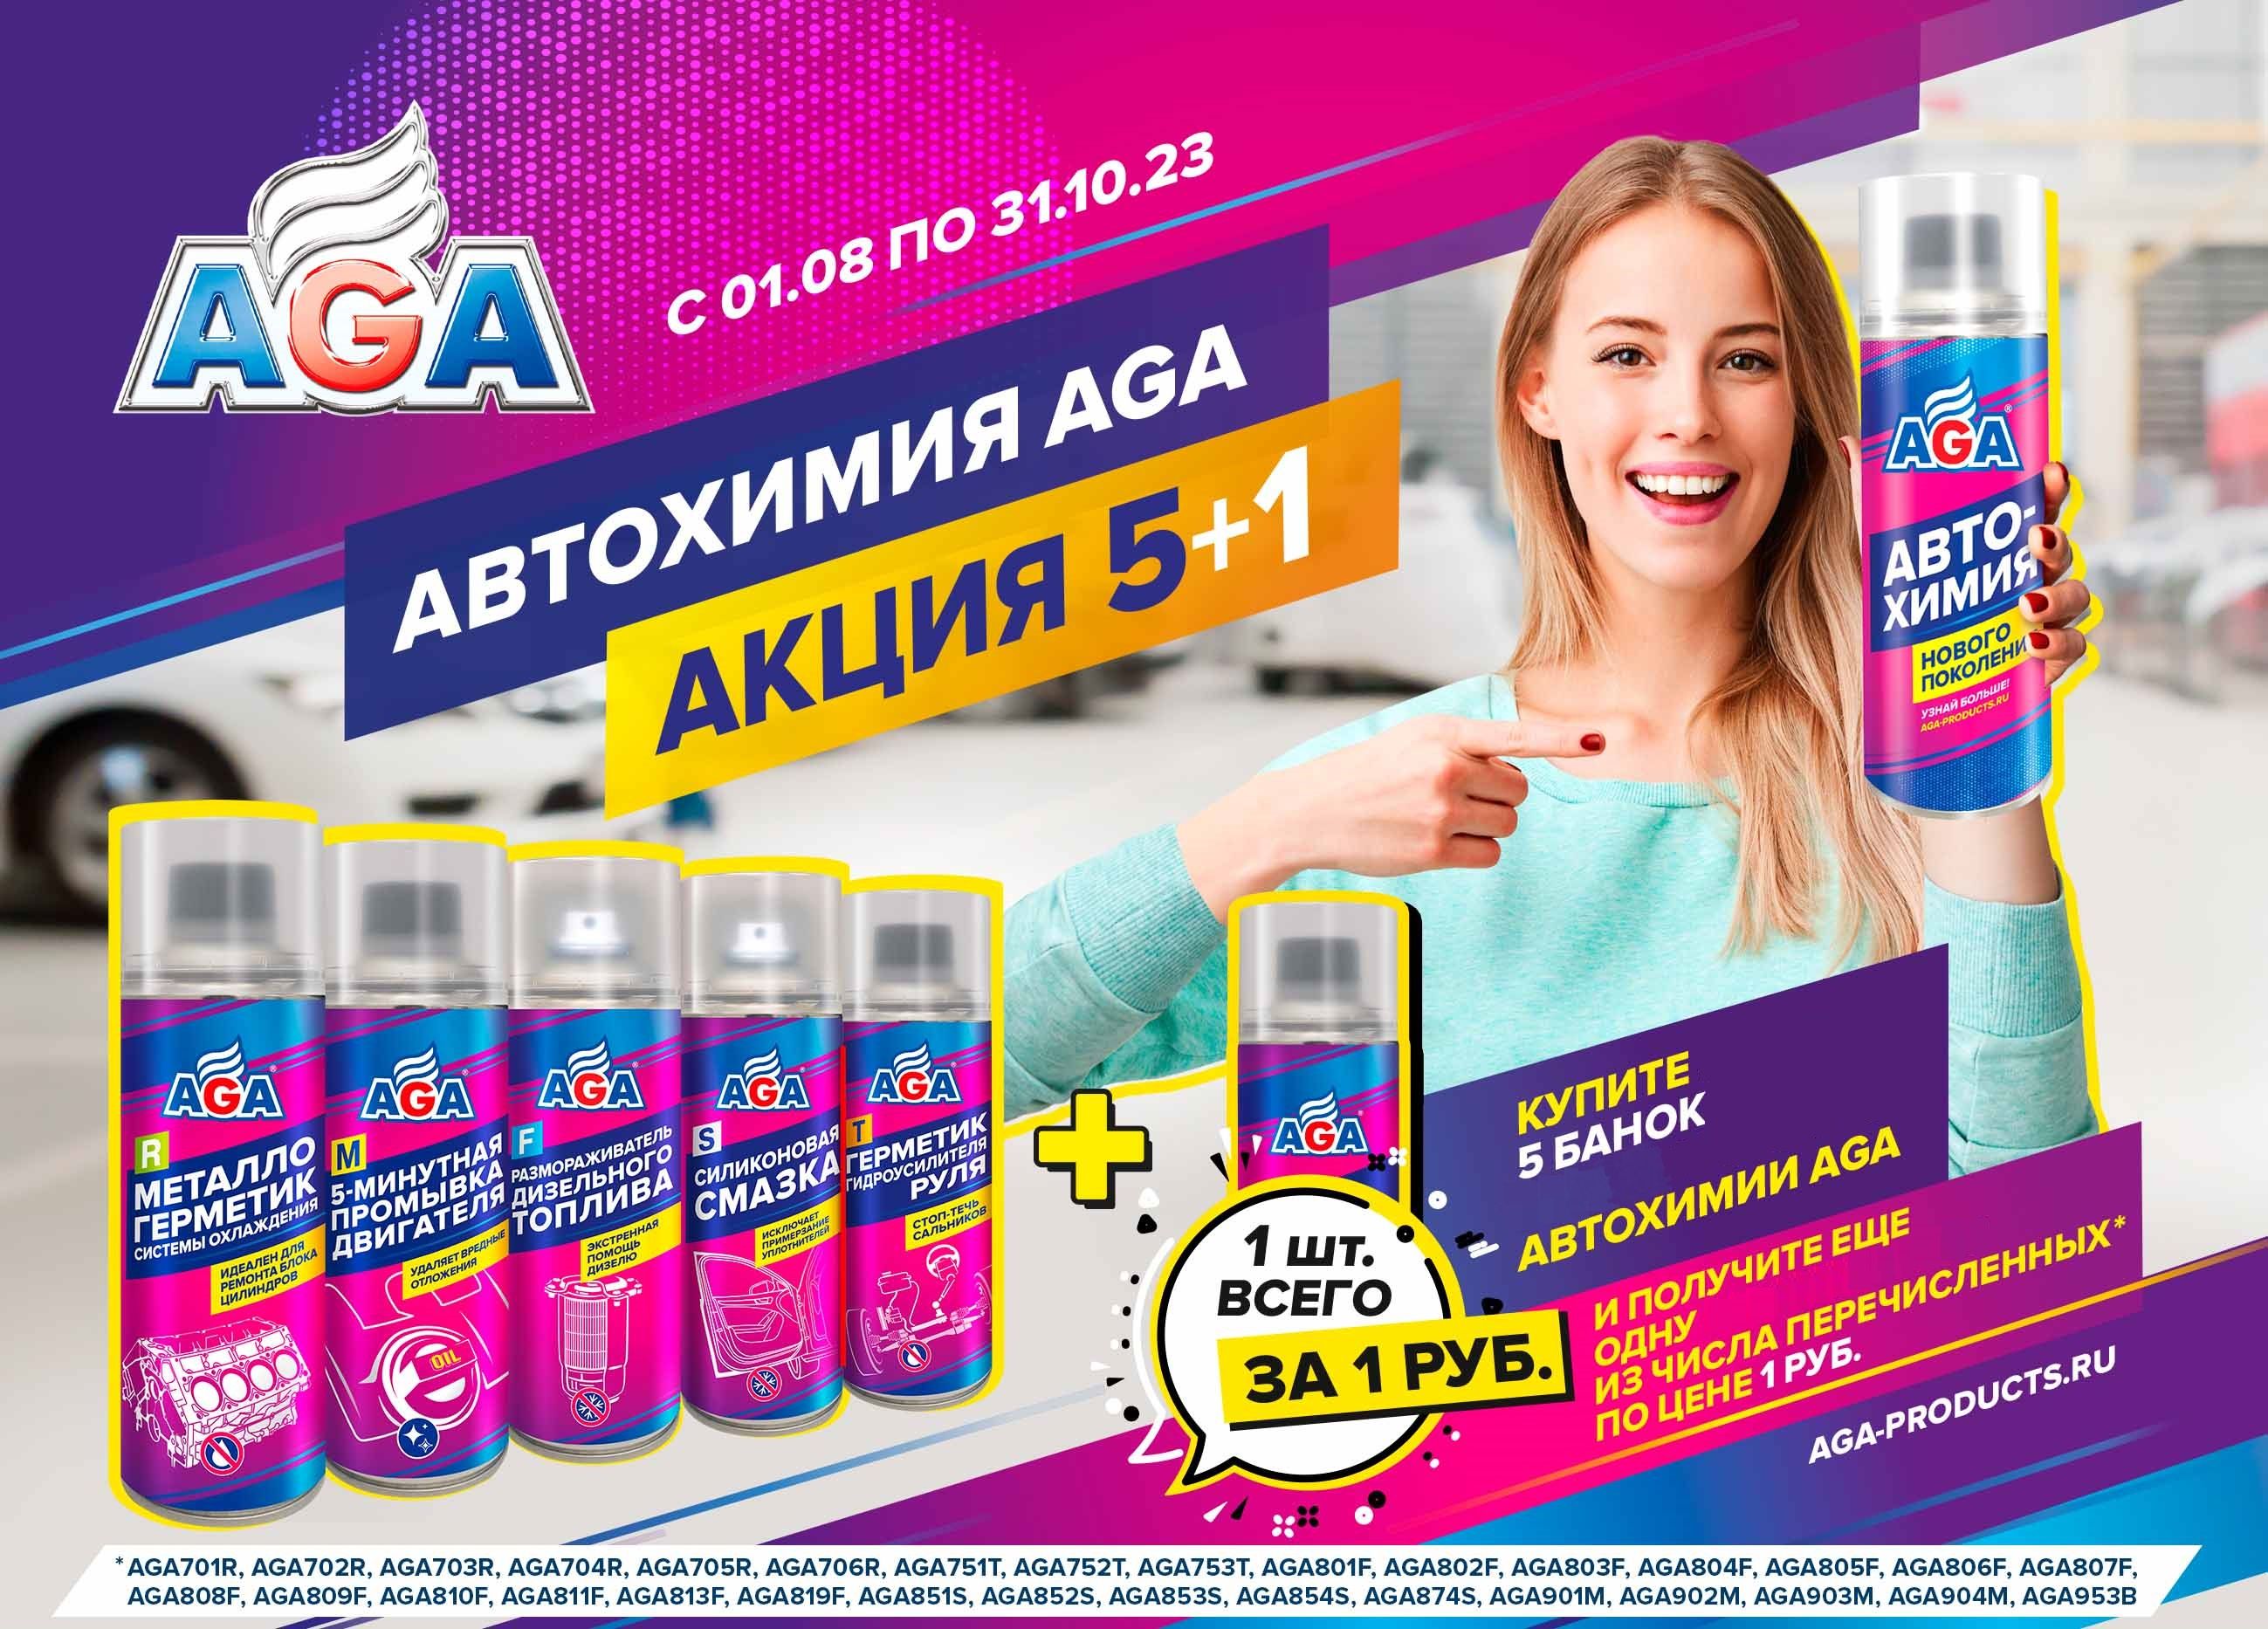 Автохимия AGA. Акция 5+1